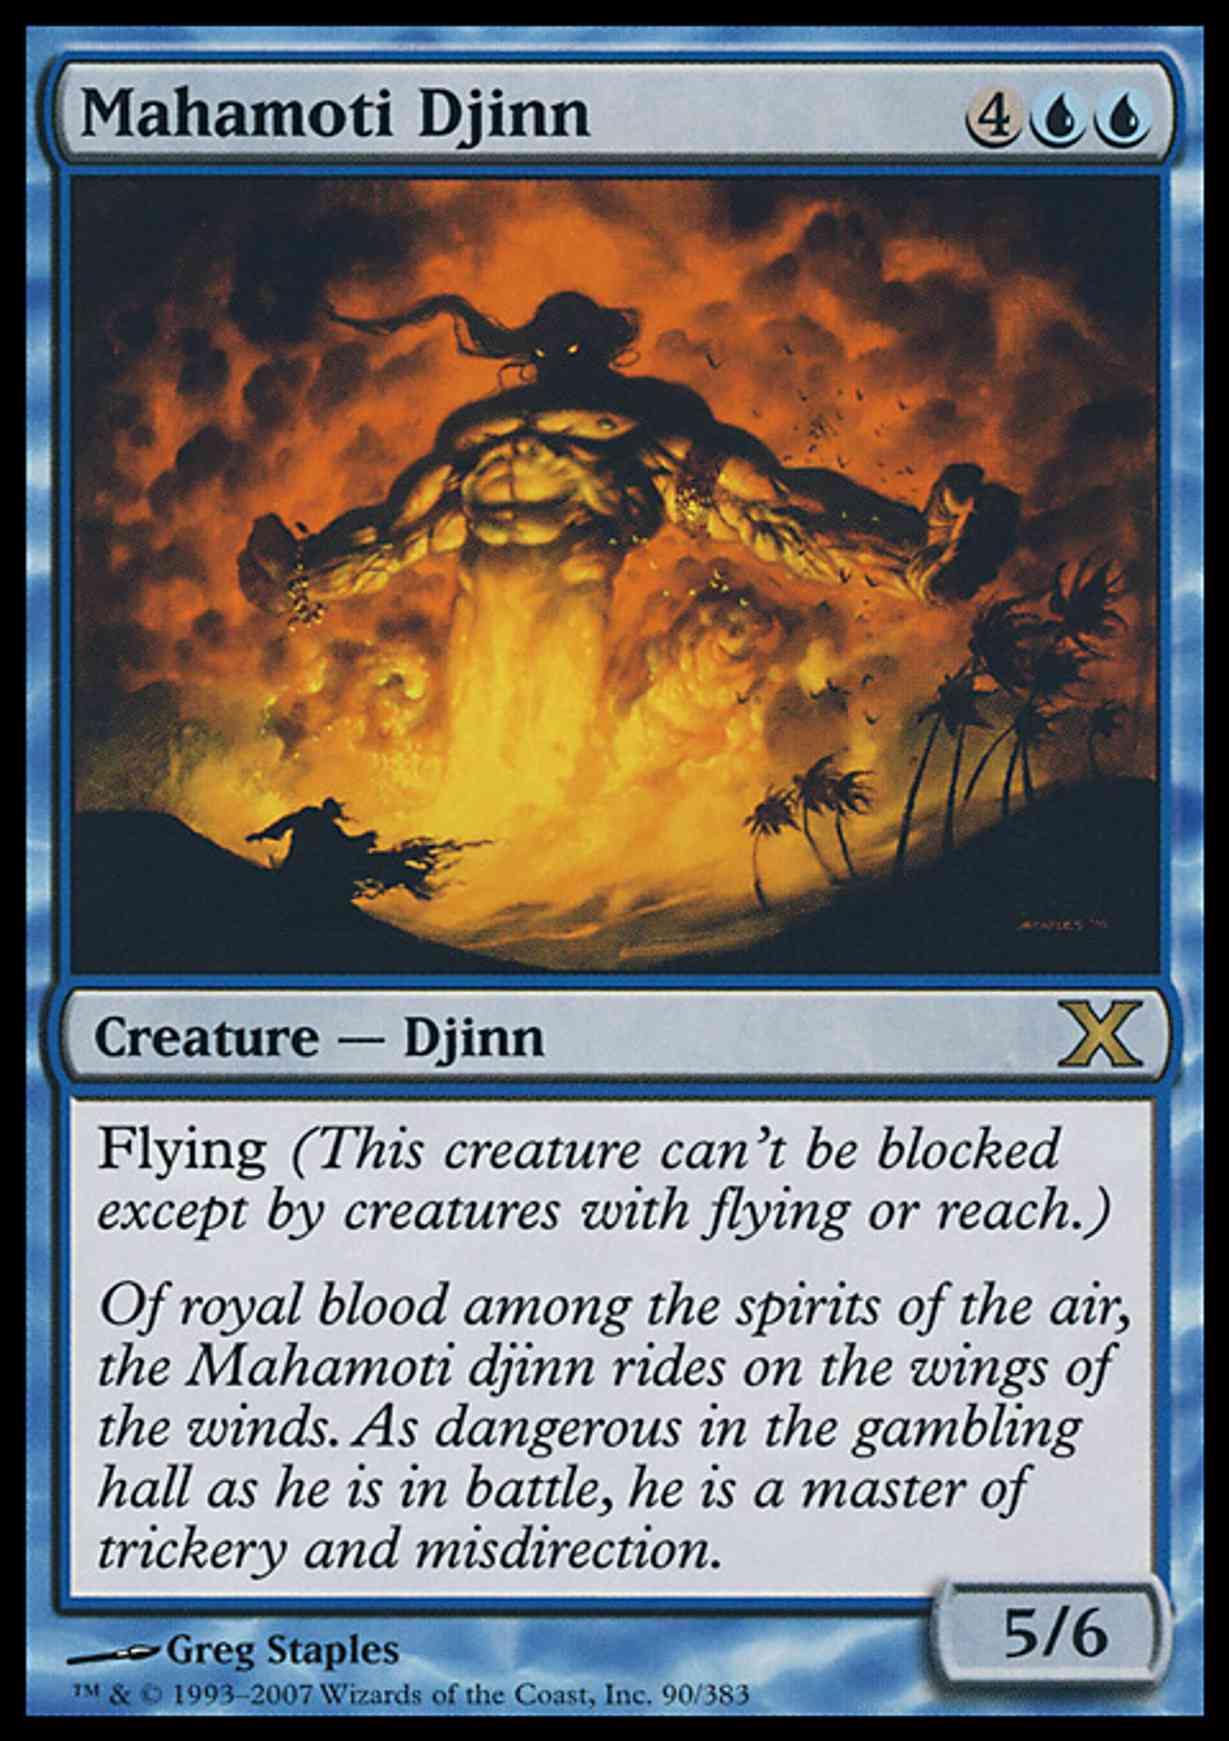 Mahamoti Djinn magic card front